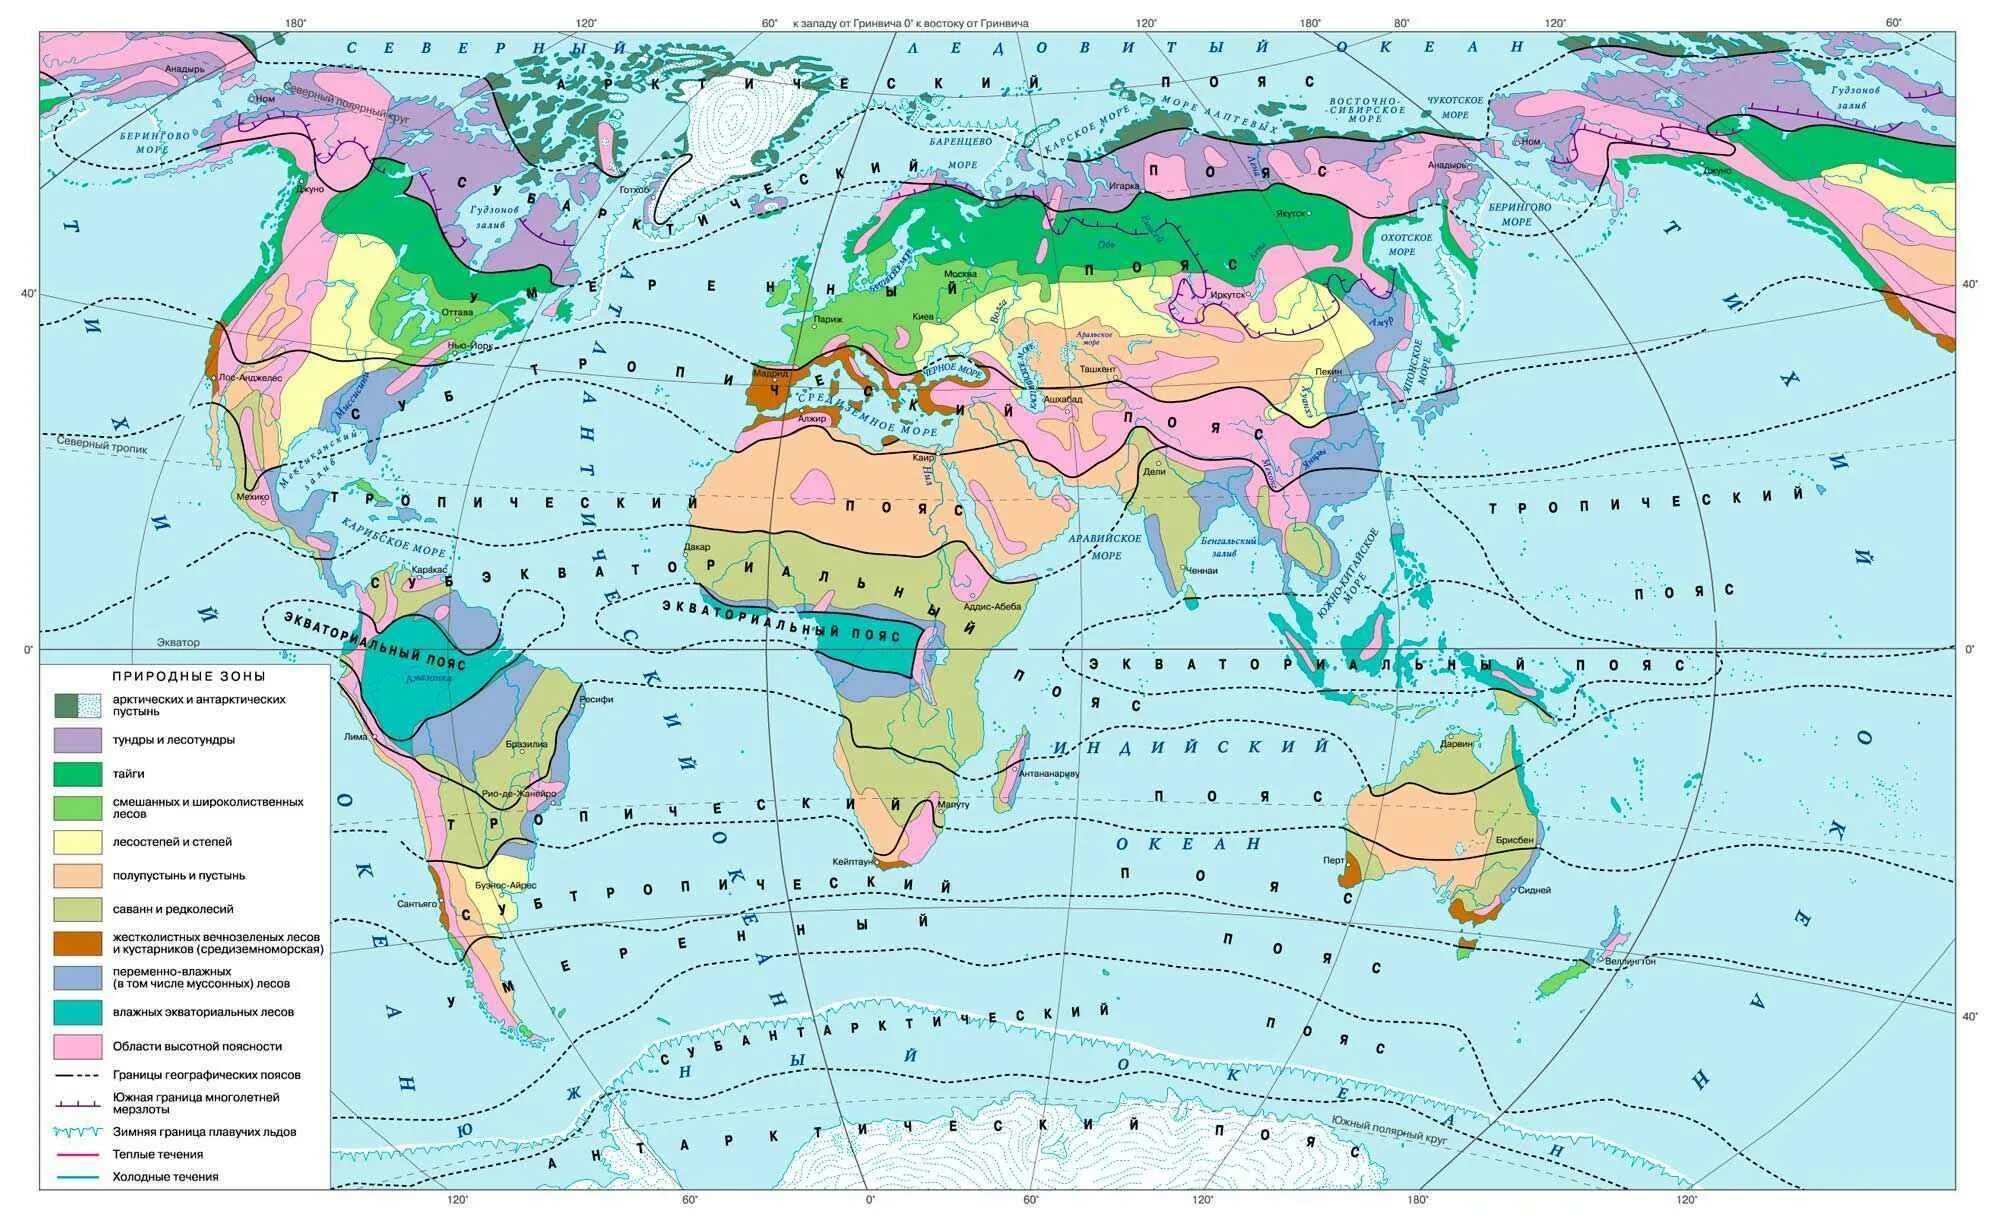 Тема природные зоны 7 класс. Карта климатических поясов мира и природных зон. География карта мира климатические пояса. Карта природных зон мира в хорошем качестве. Географическая карта мира с природными зонами.